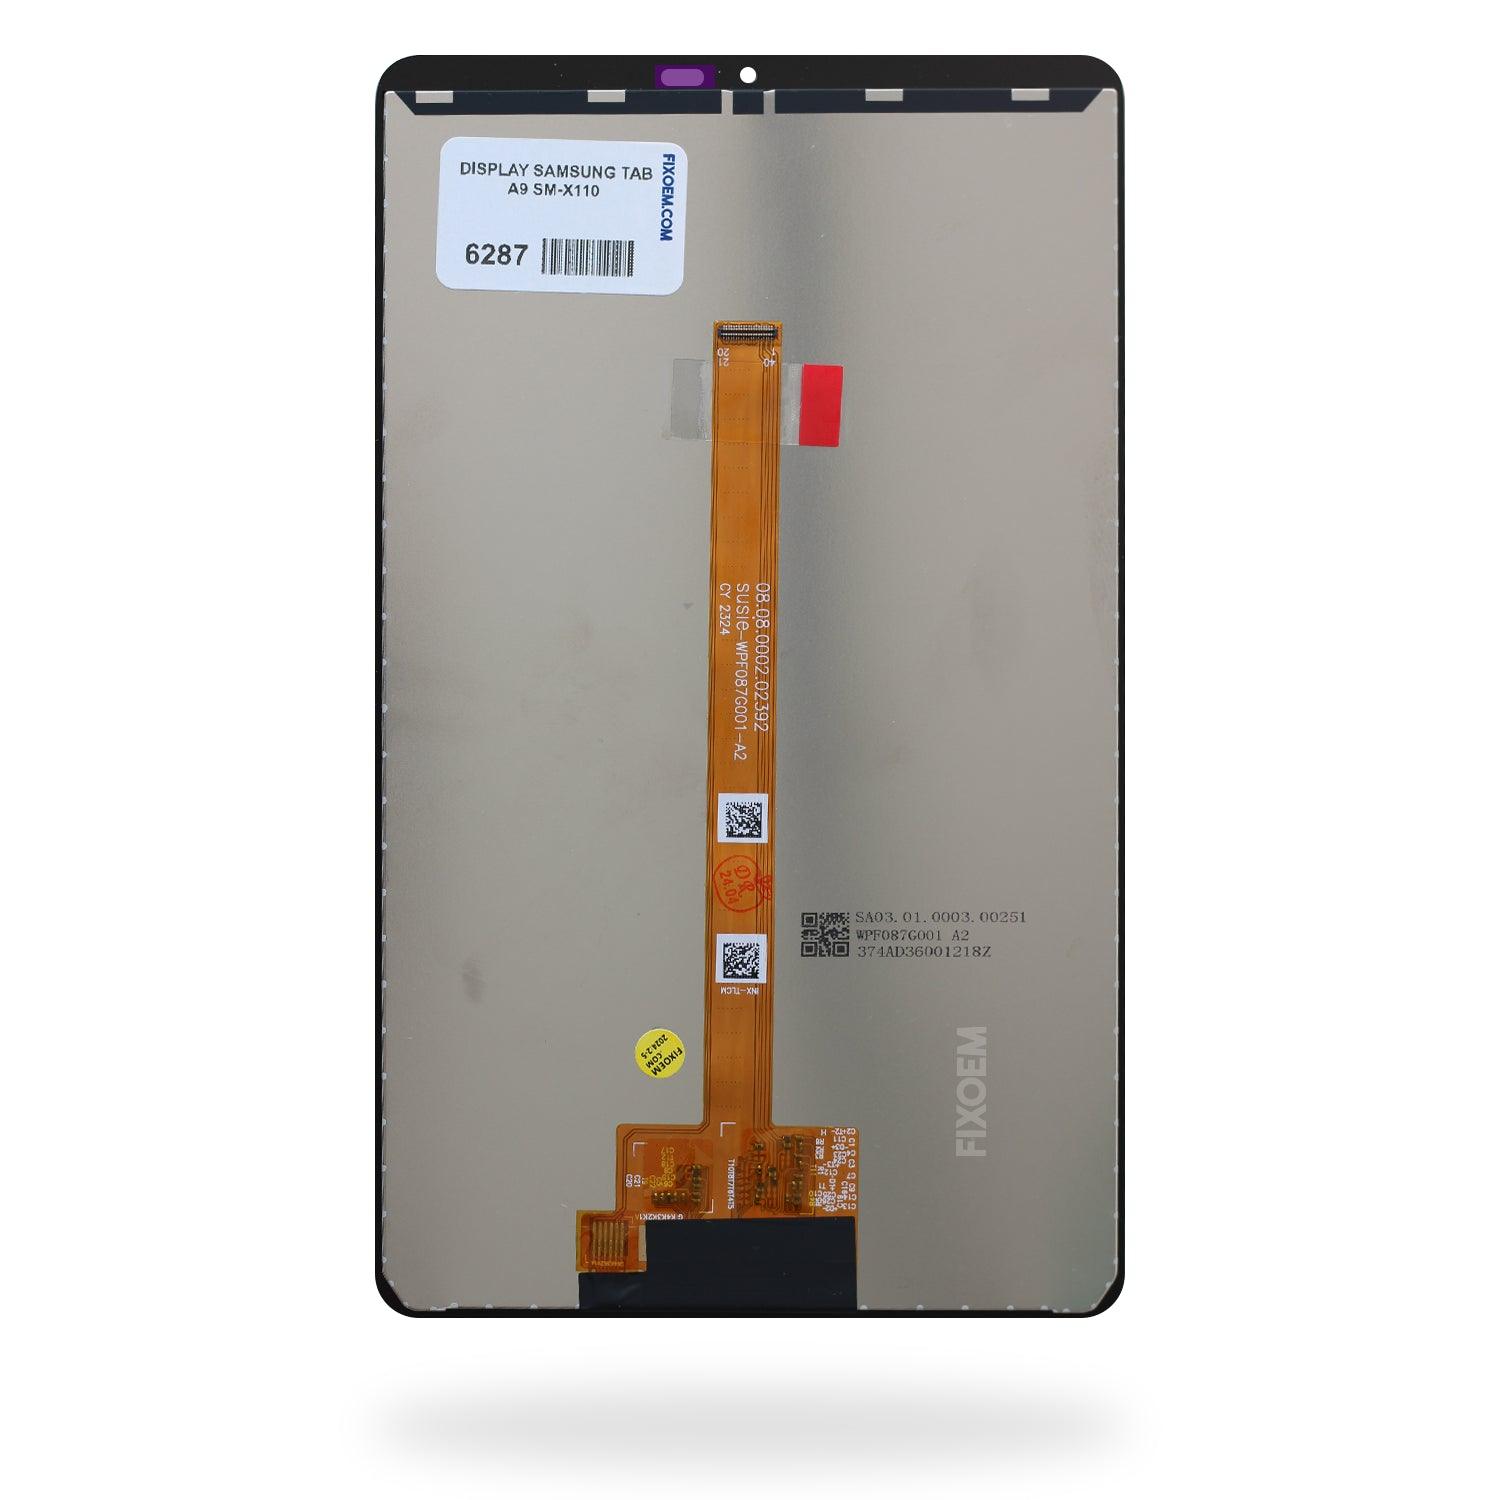 Display Samsung Tab A9 Sm-X110 a solo $ 320.00 Refaccion y puestos celulares, refurbish y microelectronica.- FixOEM